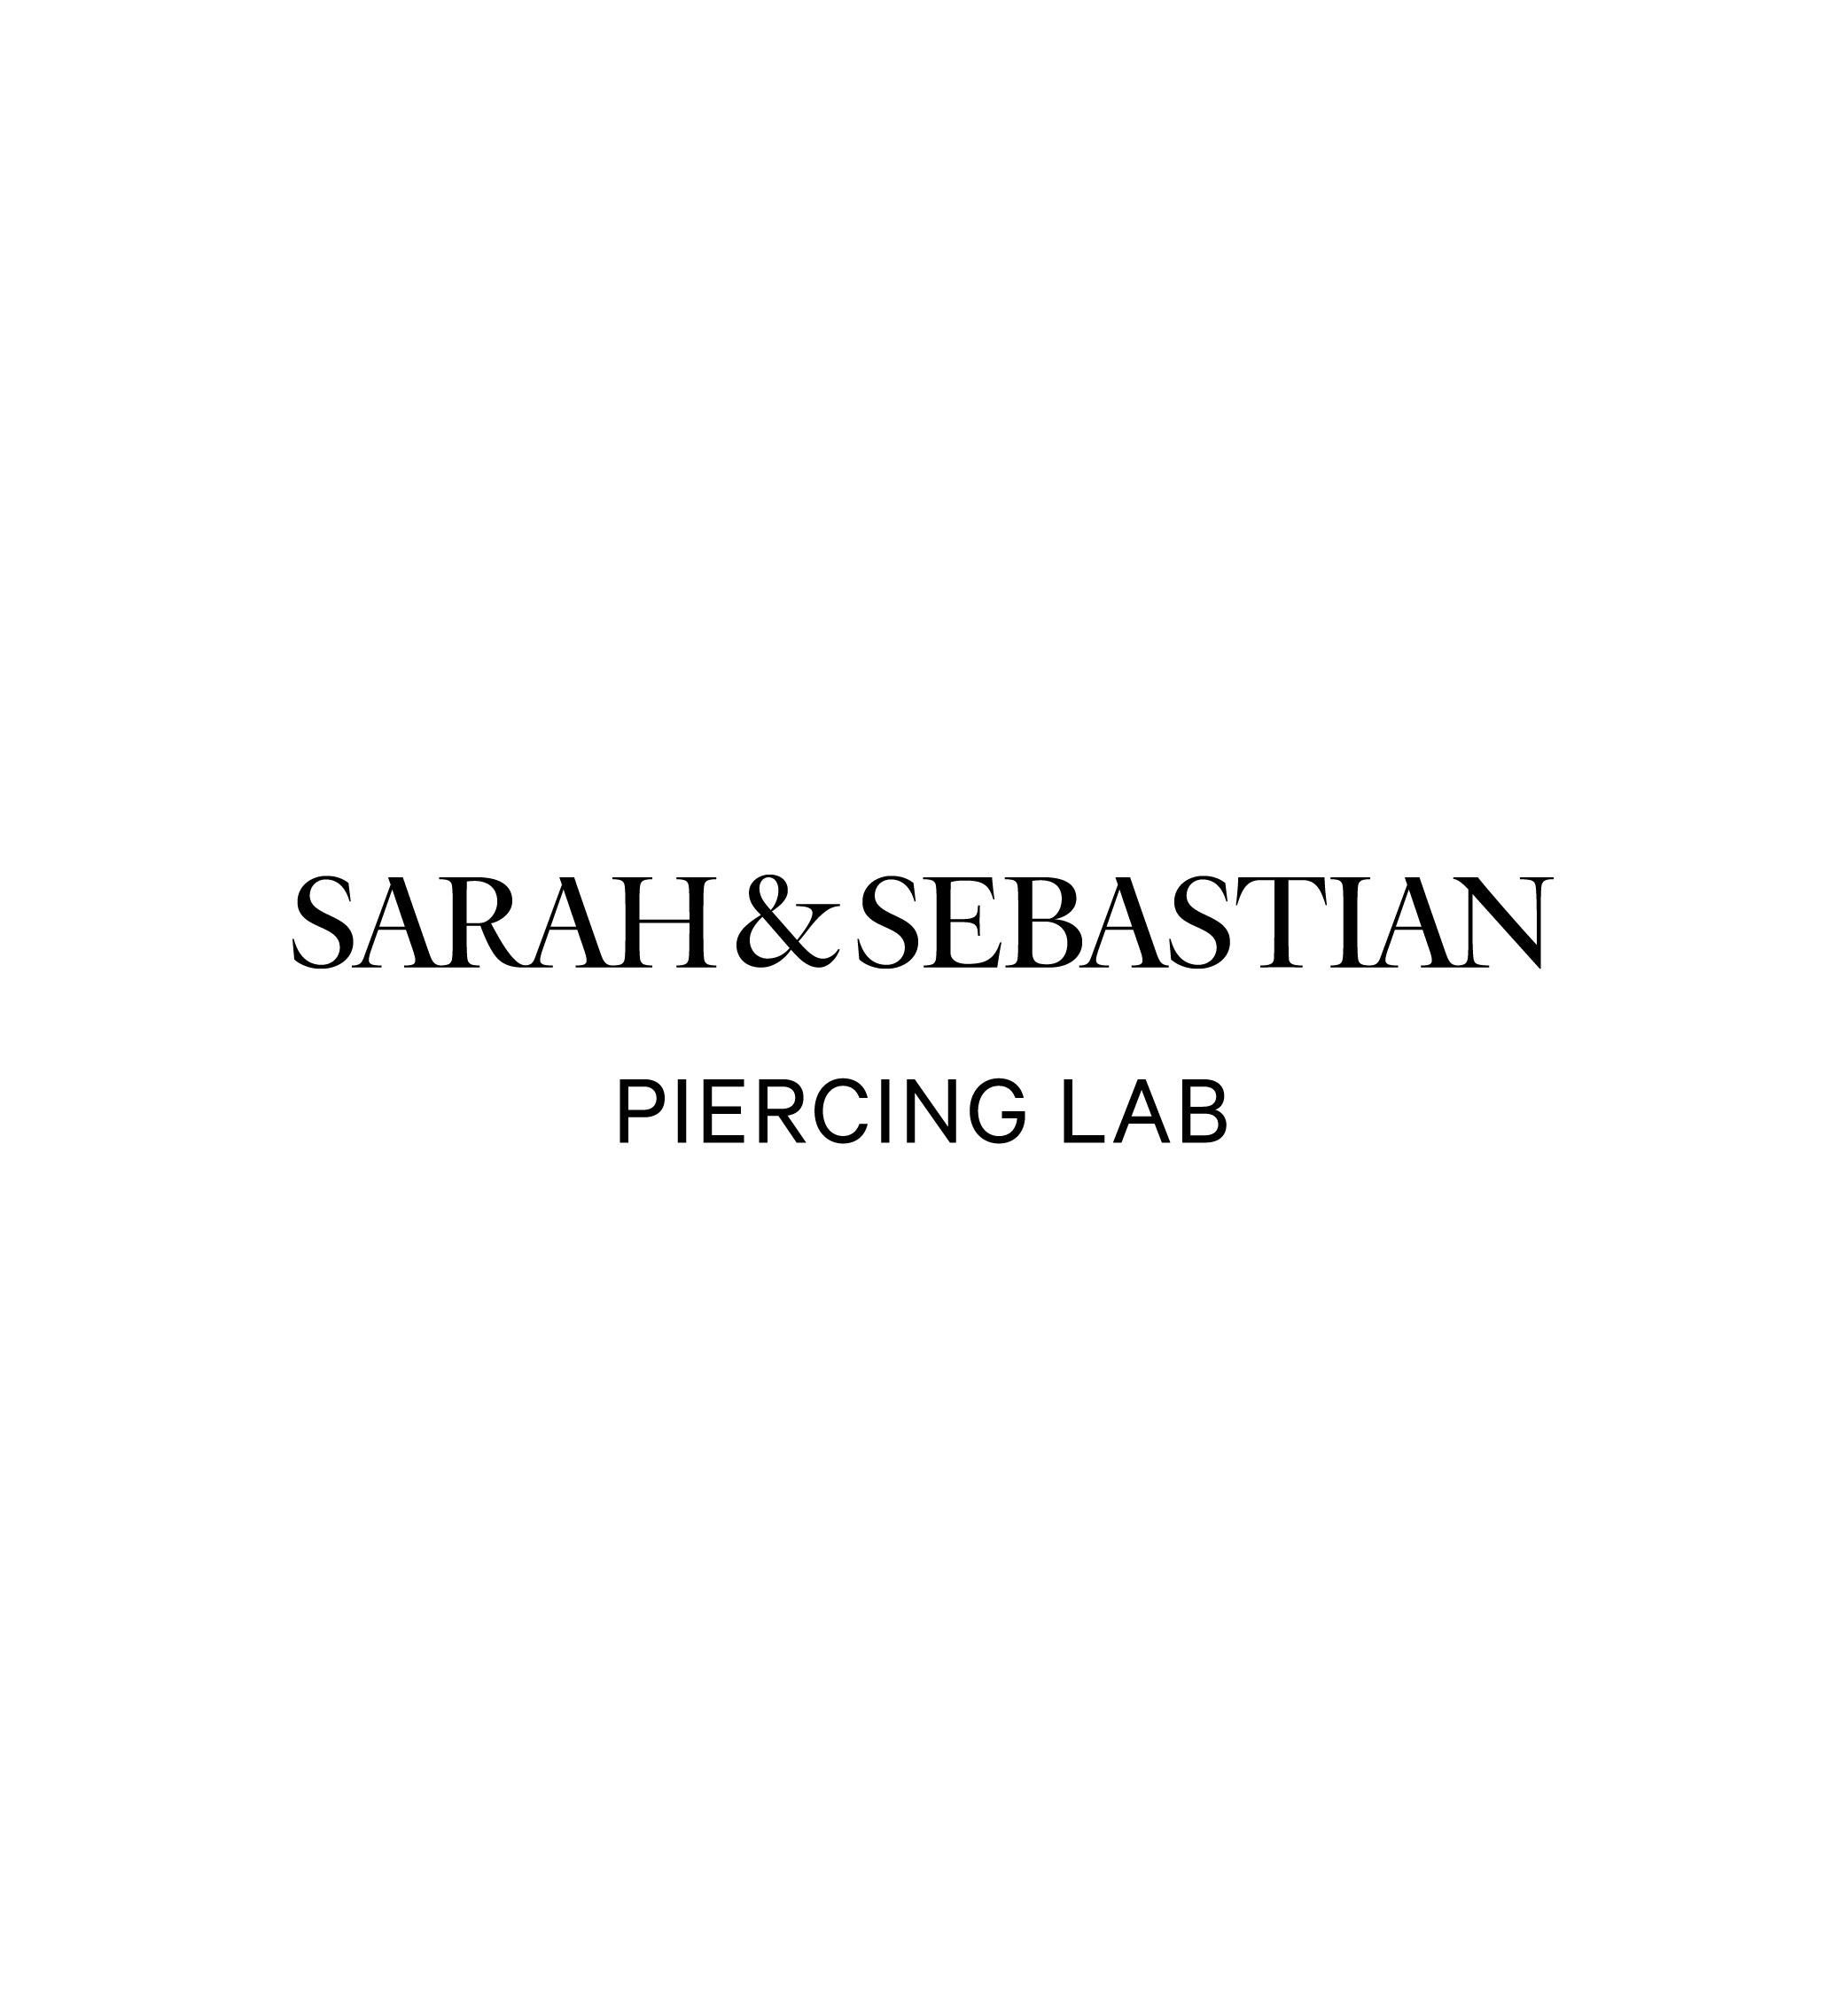 Sarah & Sebastian Piercing Lab